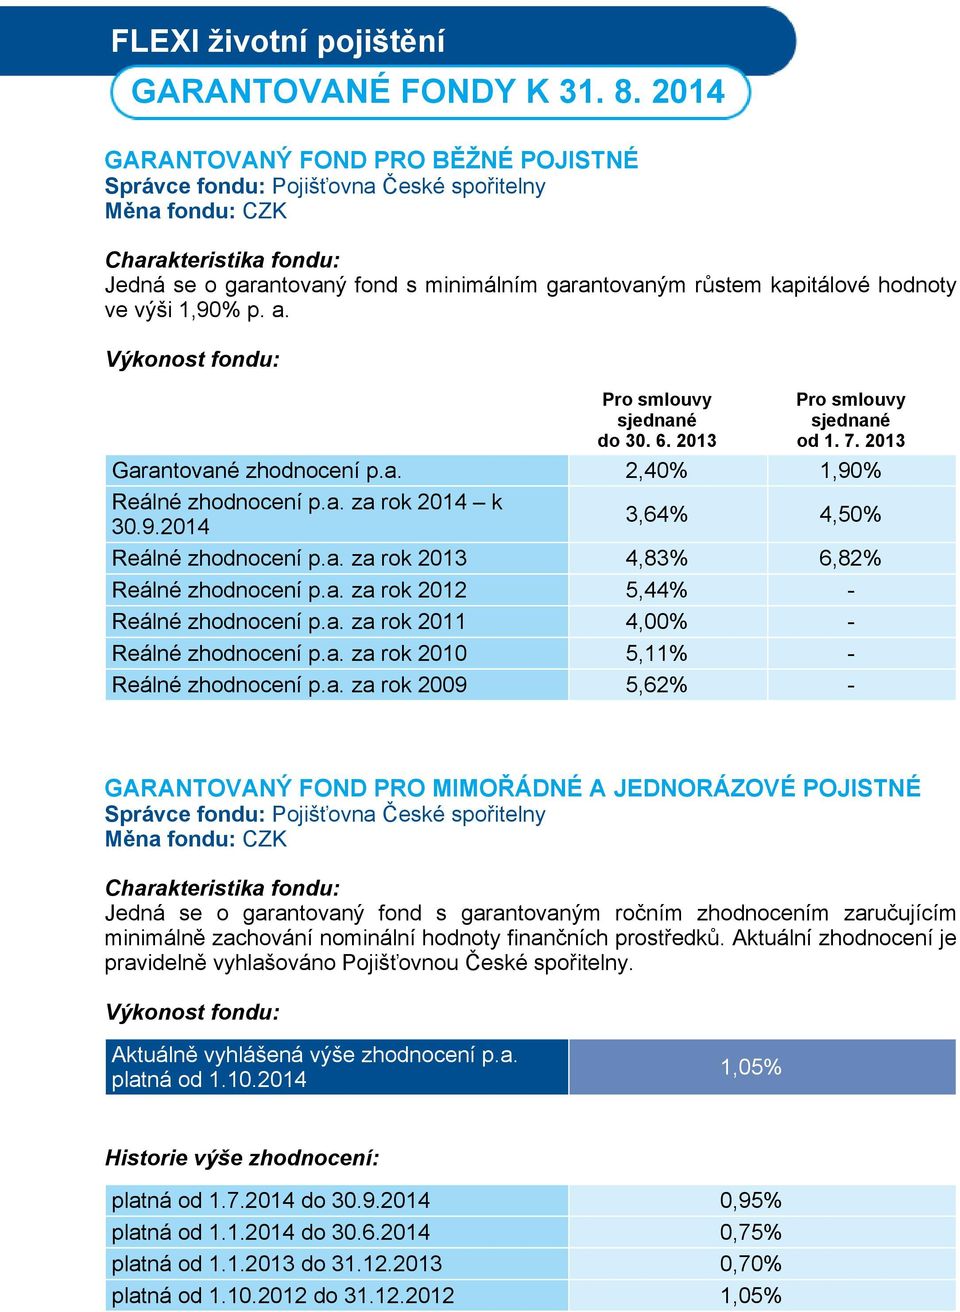 Výkonost fondu: Pro smlouvy sjednané do 30. 6. 2013 Pro smlouvy sjednané od 1. 7. 2013 Garantované zhodnocení p.a. 2,40% 1,90% Reálné zhodnocení p.a. za rok 2014 k 30.9.2014 3,64% 4,50% Reálné zhodnocení p.